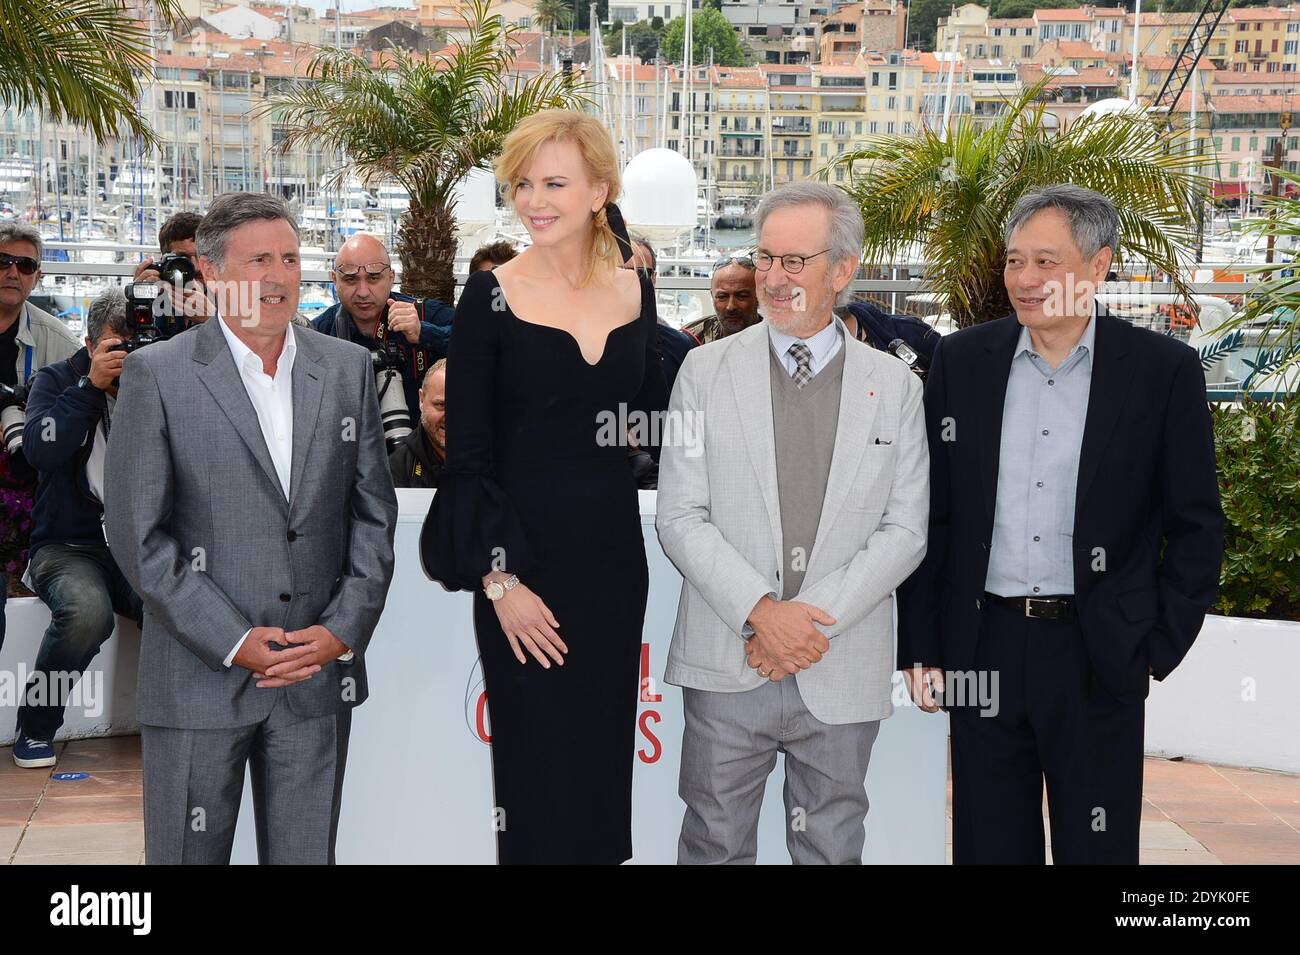 Daniel Auteuil, Nicole Kidman, Director Steven Spielberg, Ang Lee posando en el fotocentro del jurado celebrado en el Palais des Festivals como parte del Festival de Cannes 66, en Cannes, sur de Francia, el 15 de mayo de 2013. Foto de Nicolas Briquet/ABACAPRESS.COM Foto de stock